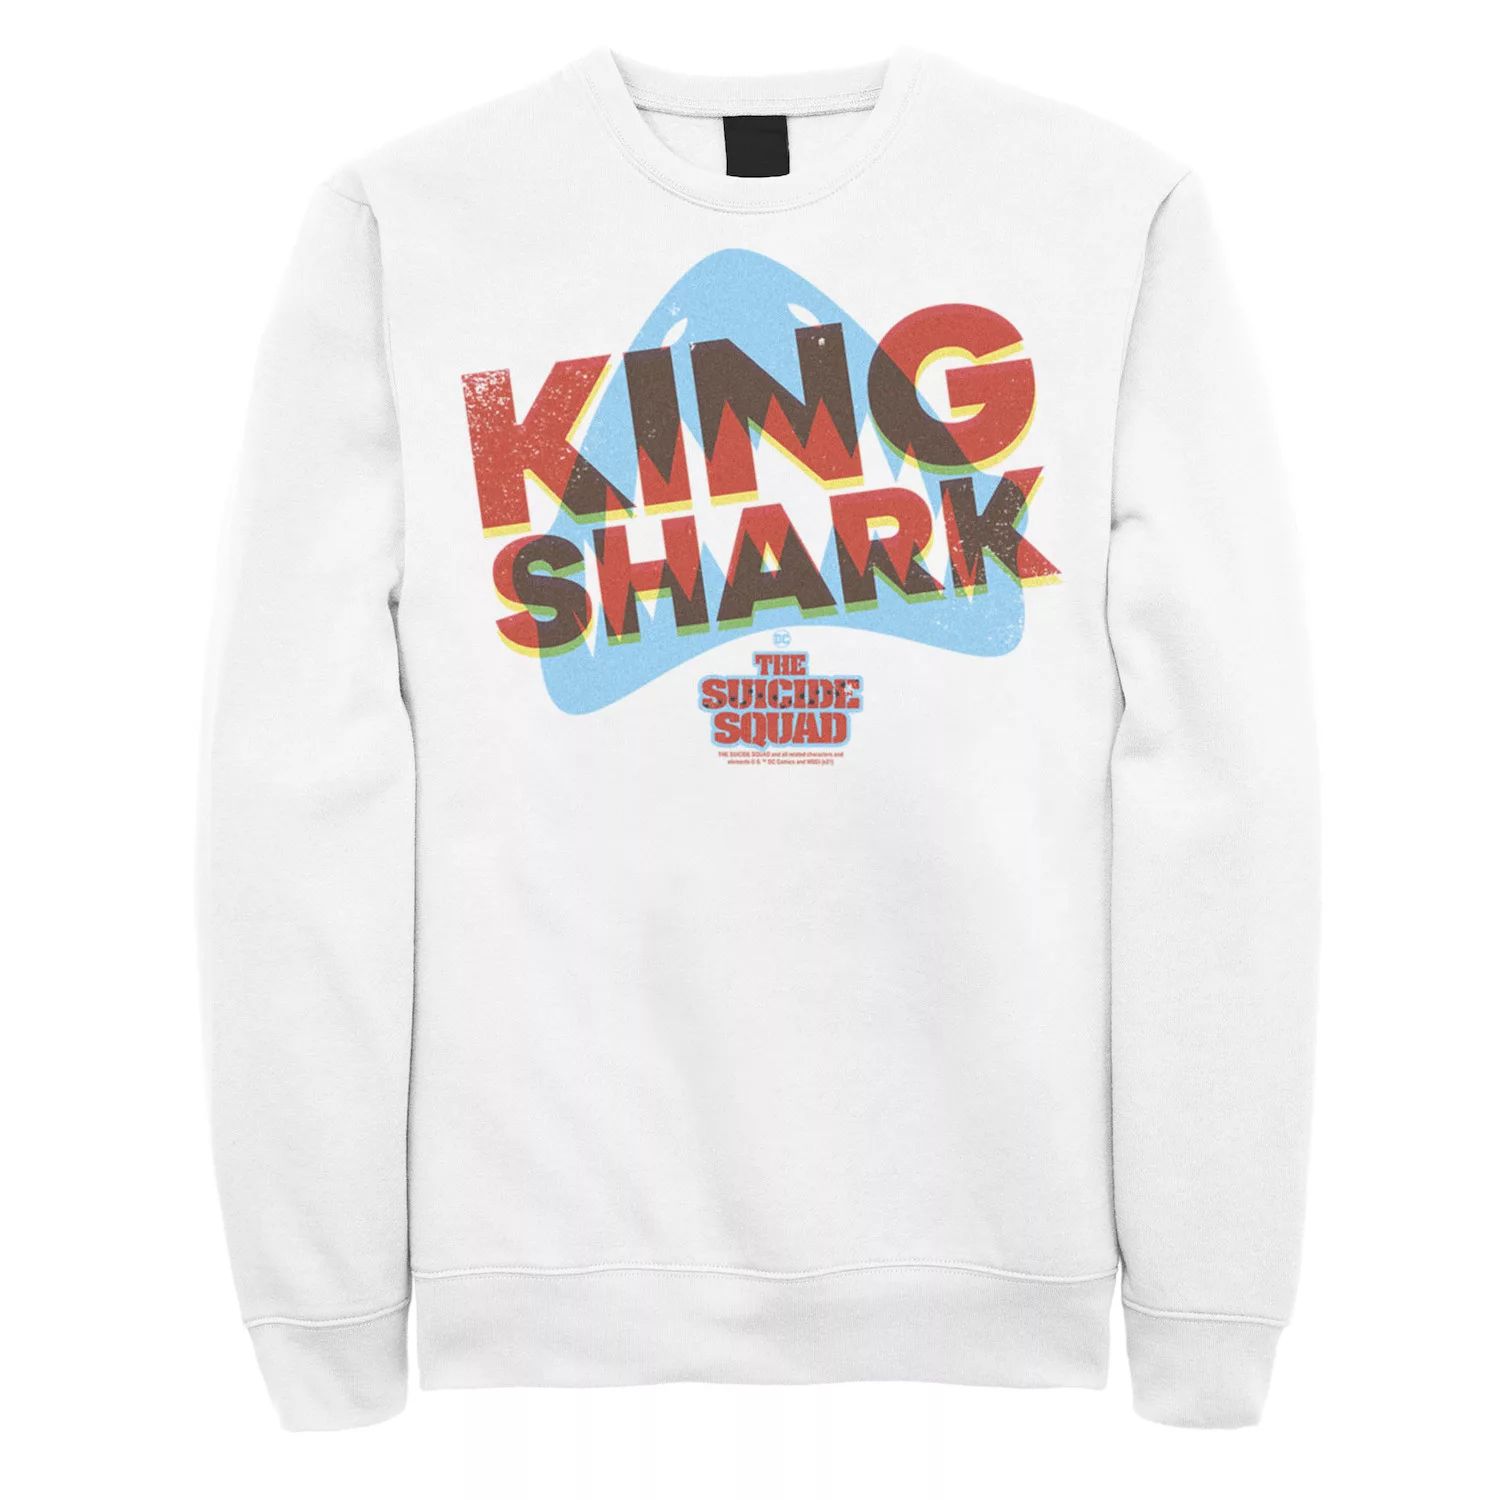 Мужской свитшот с логотипом The Suicide Squad King Shark Licensed Character